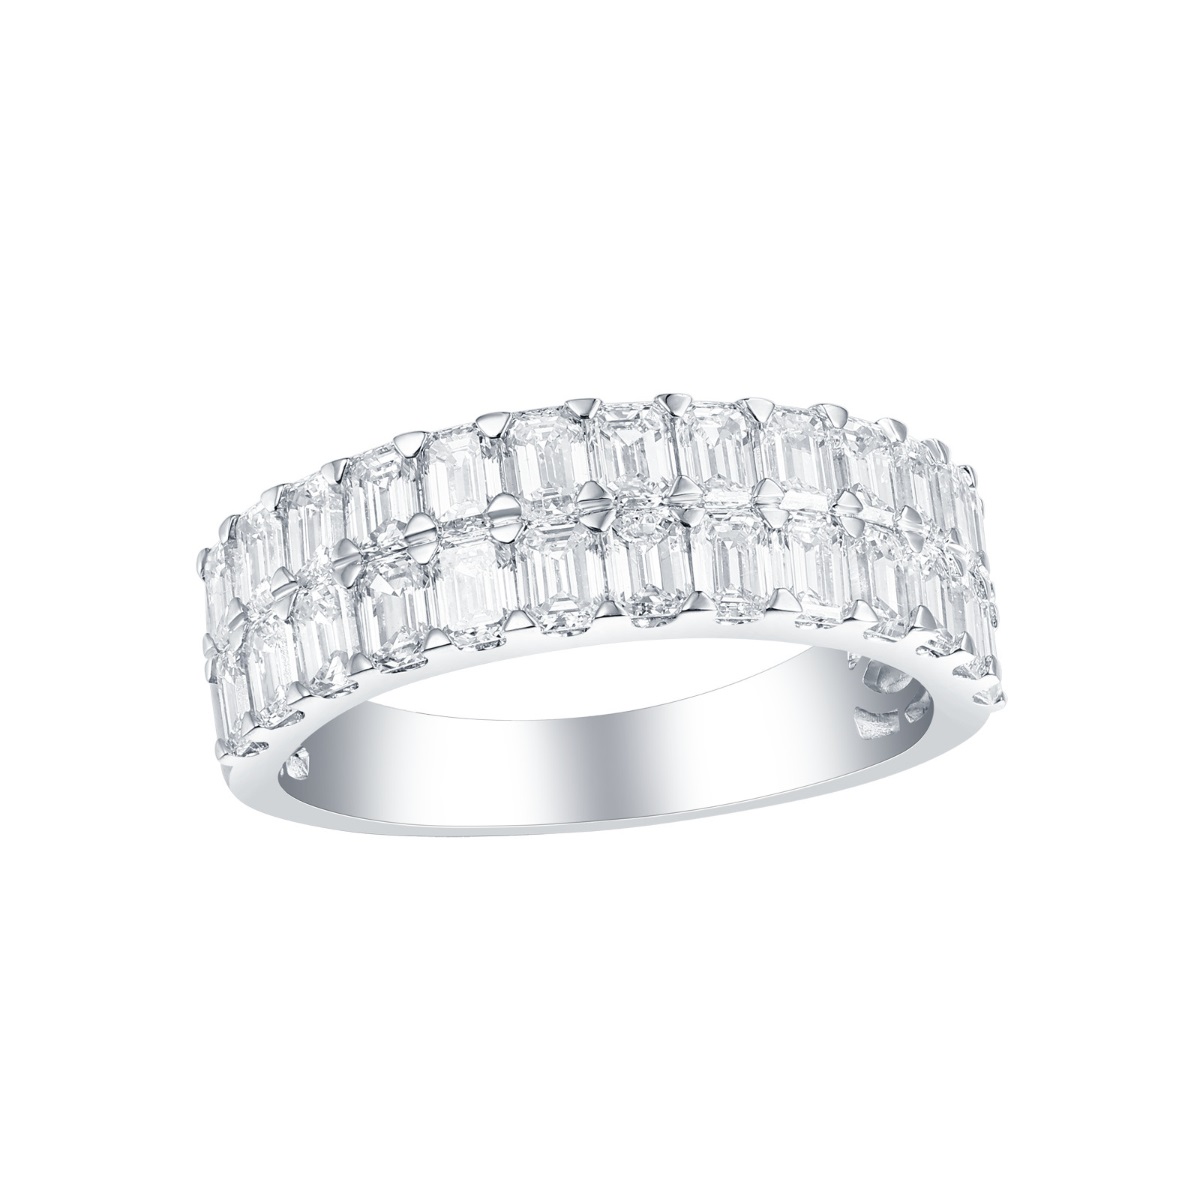 R35230WHT – 18K White Gold Diamond Ring, 2.4 TCW